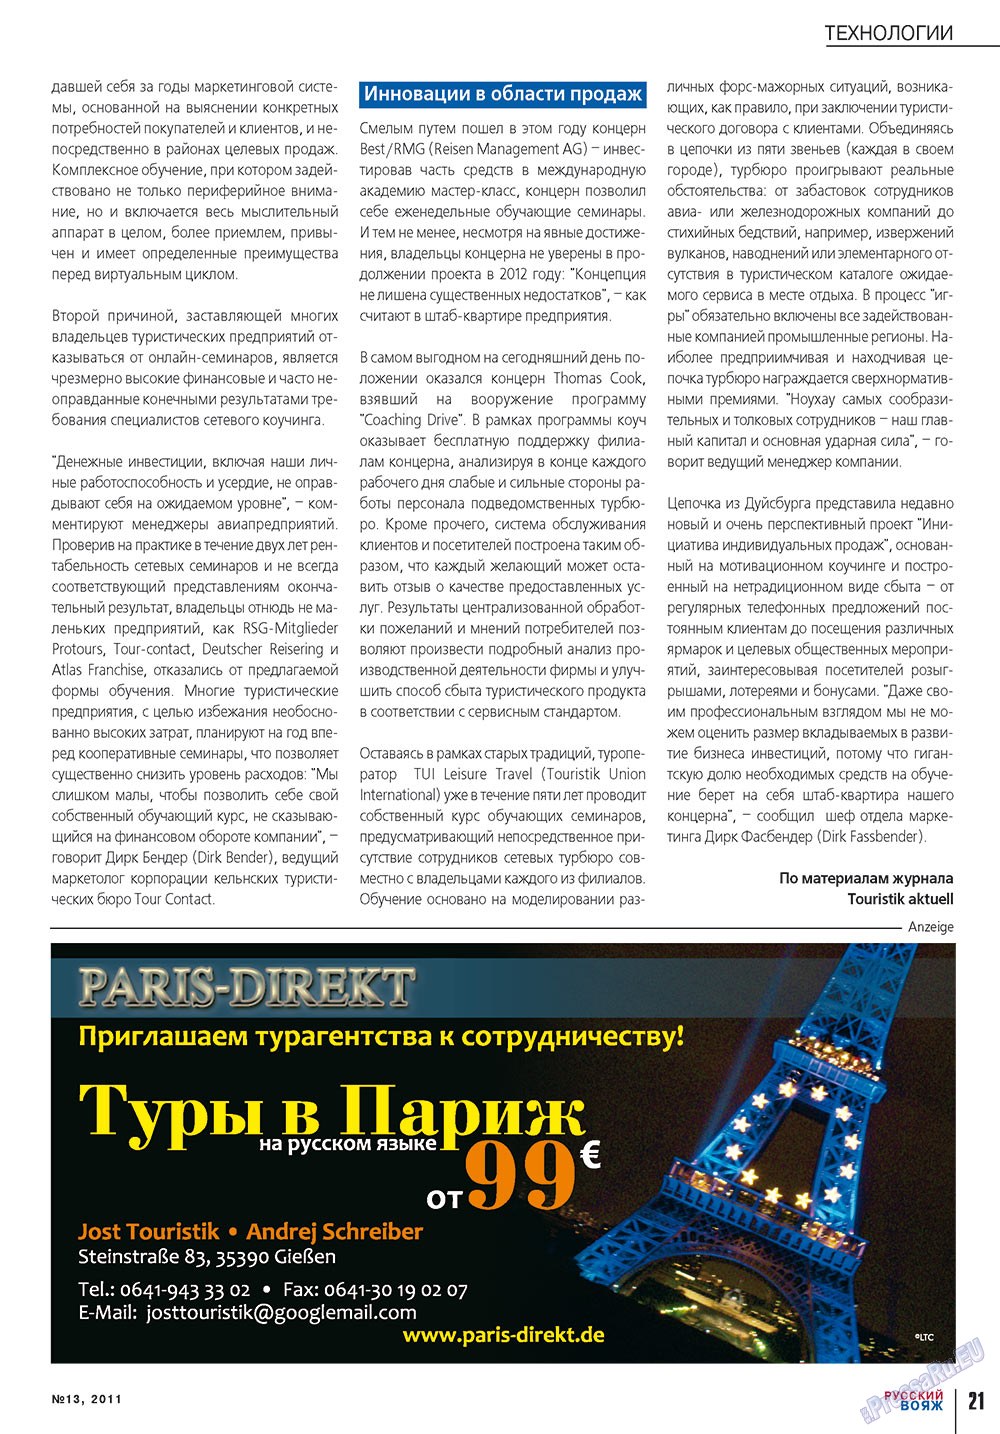 Русский вояж (журнал). 2011 год, номер 13, стр. 21